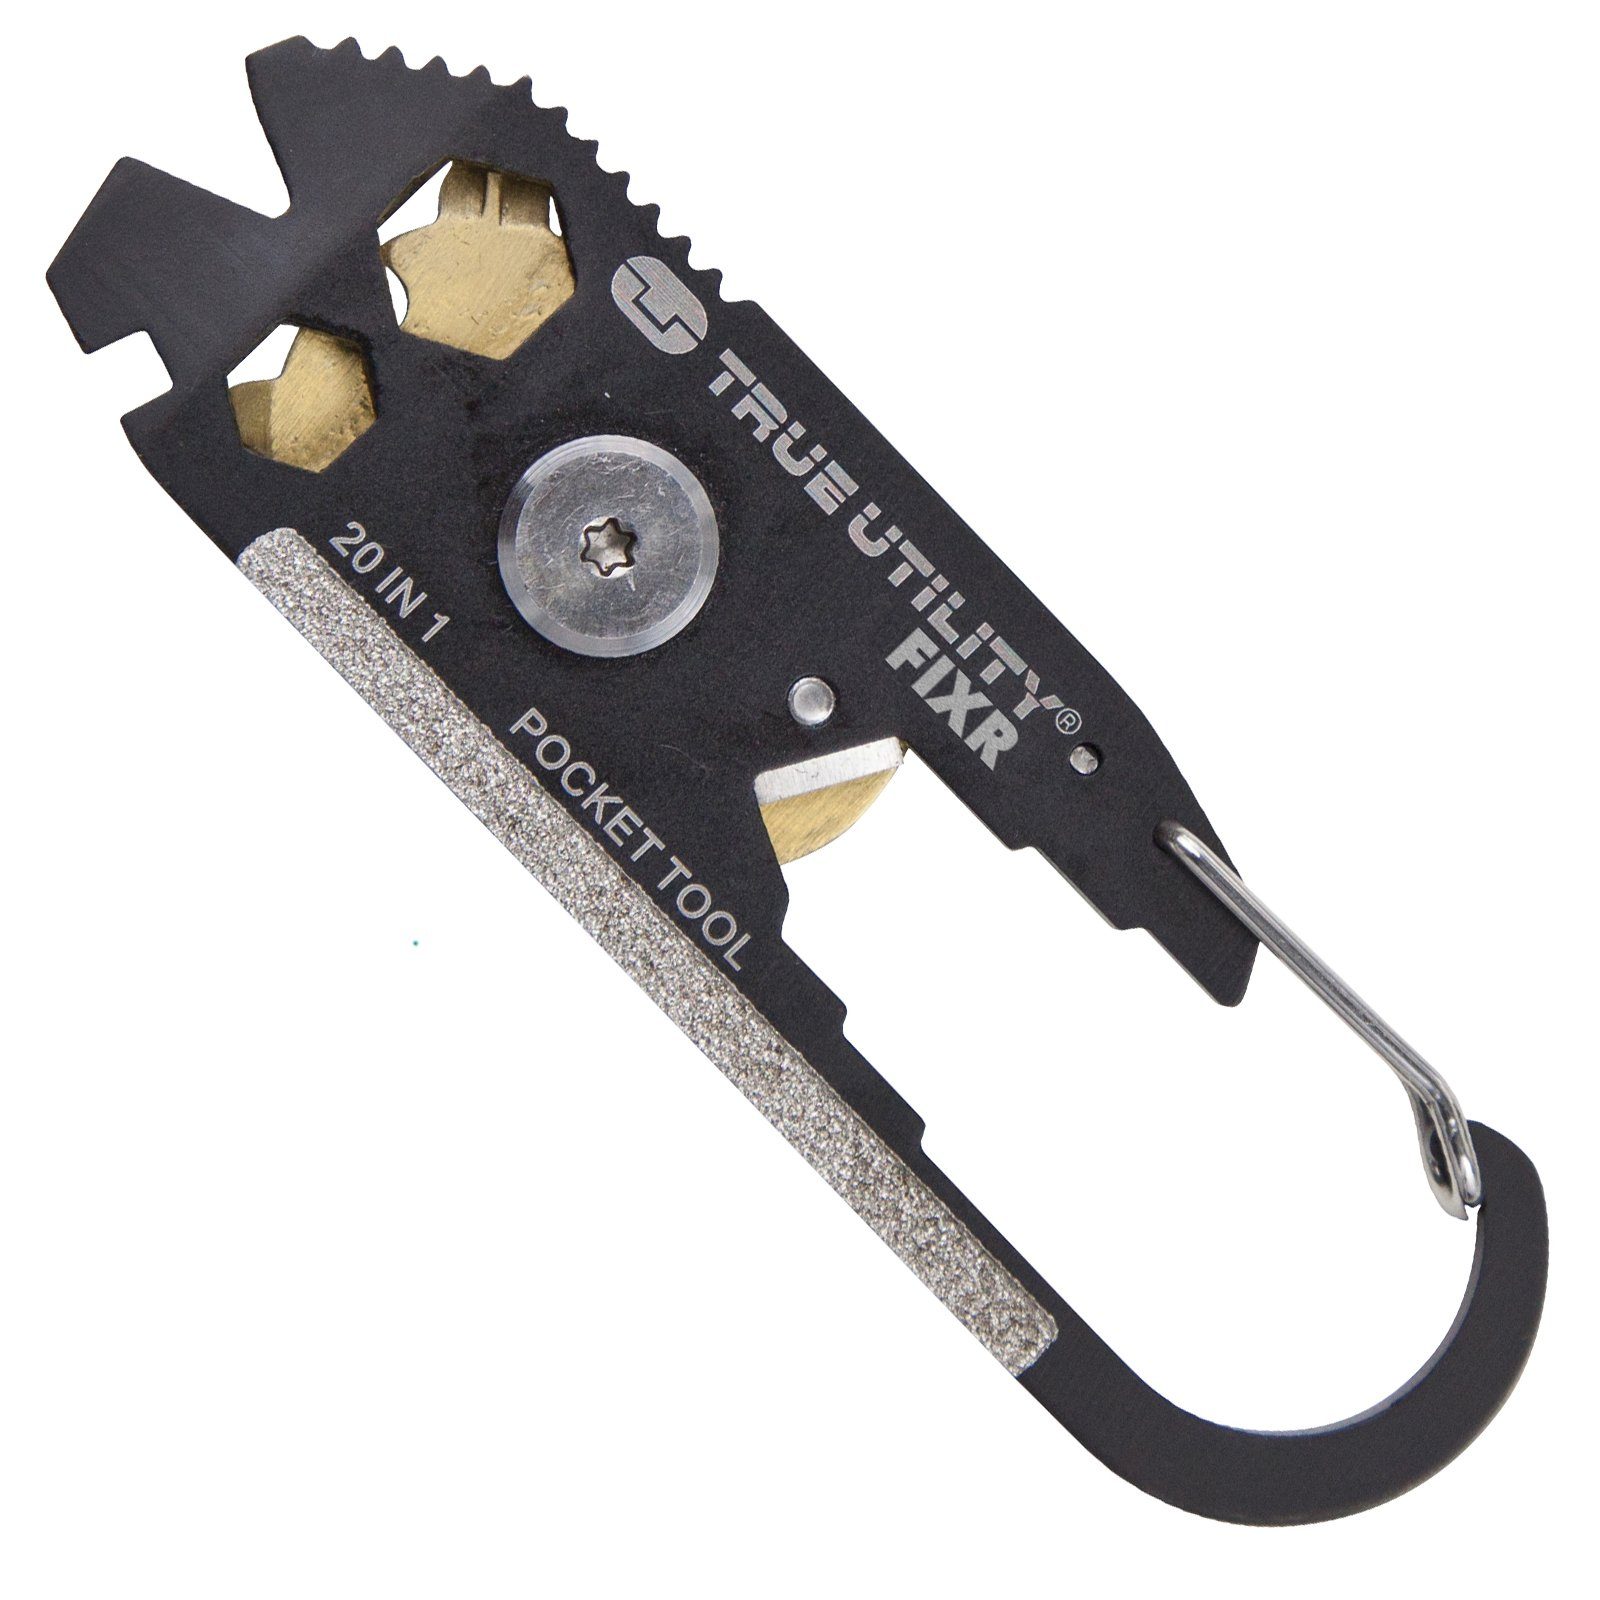 FIXR Micro Schlüsselanhänger Utility Multitool Taschenmesser Multitool Mini True Clip Tool,